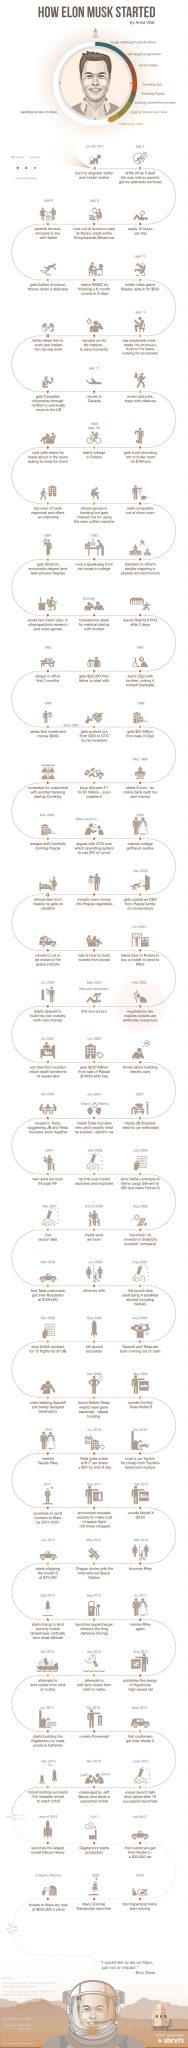 entrepreneurs-learn-elon-musk-got-started-infographic-003